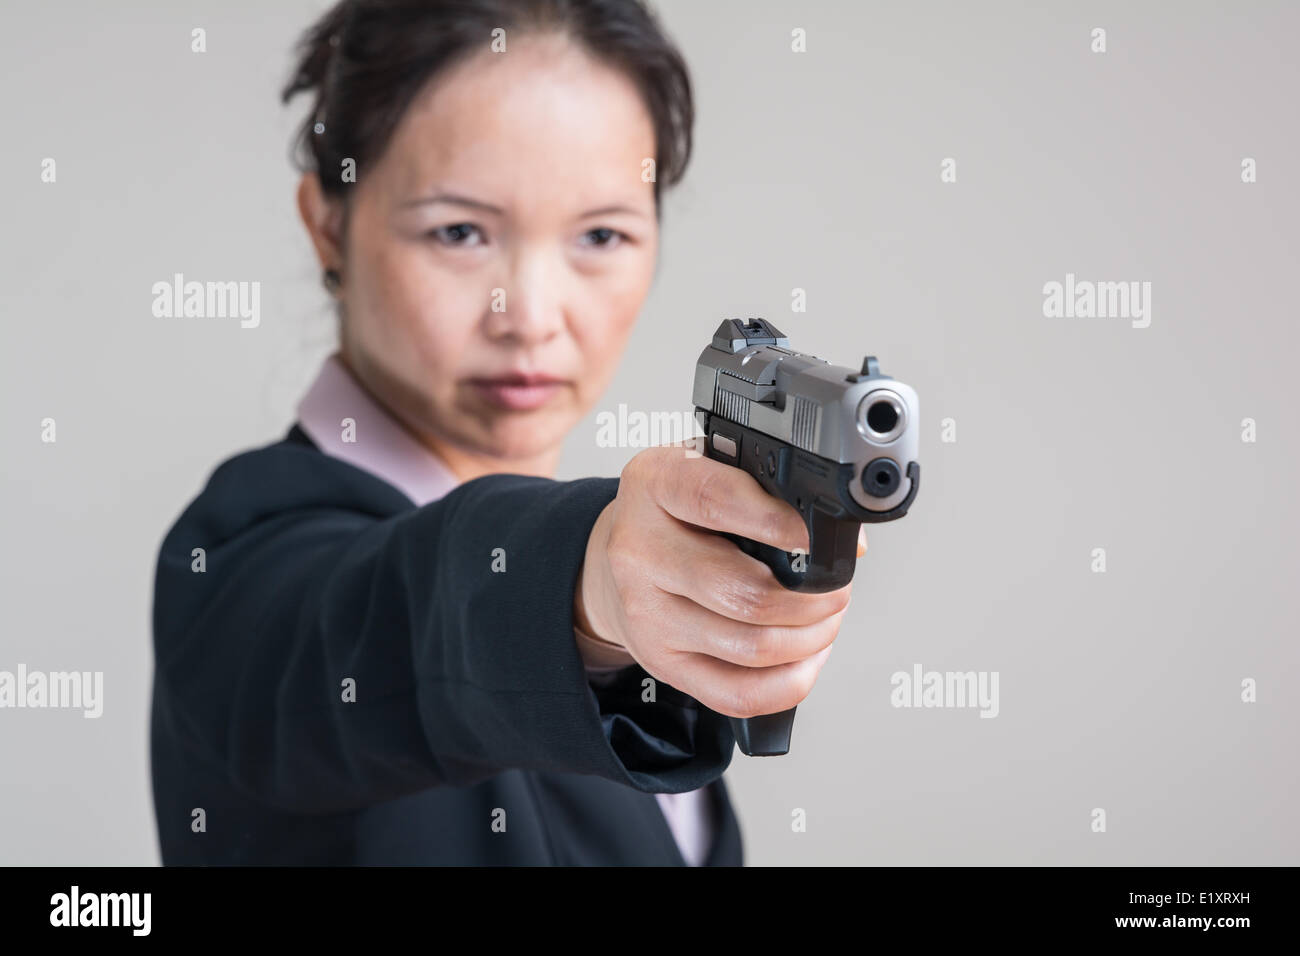 Woman aiming a hand gun Stock Photo